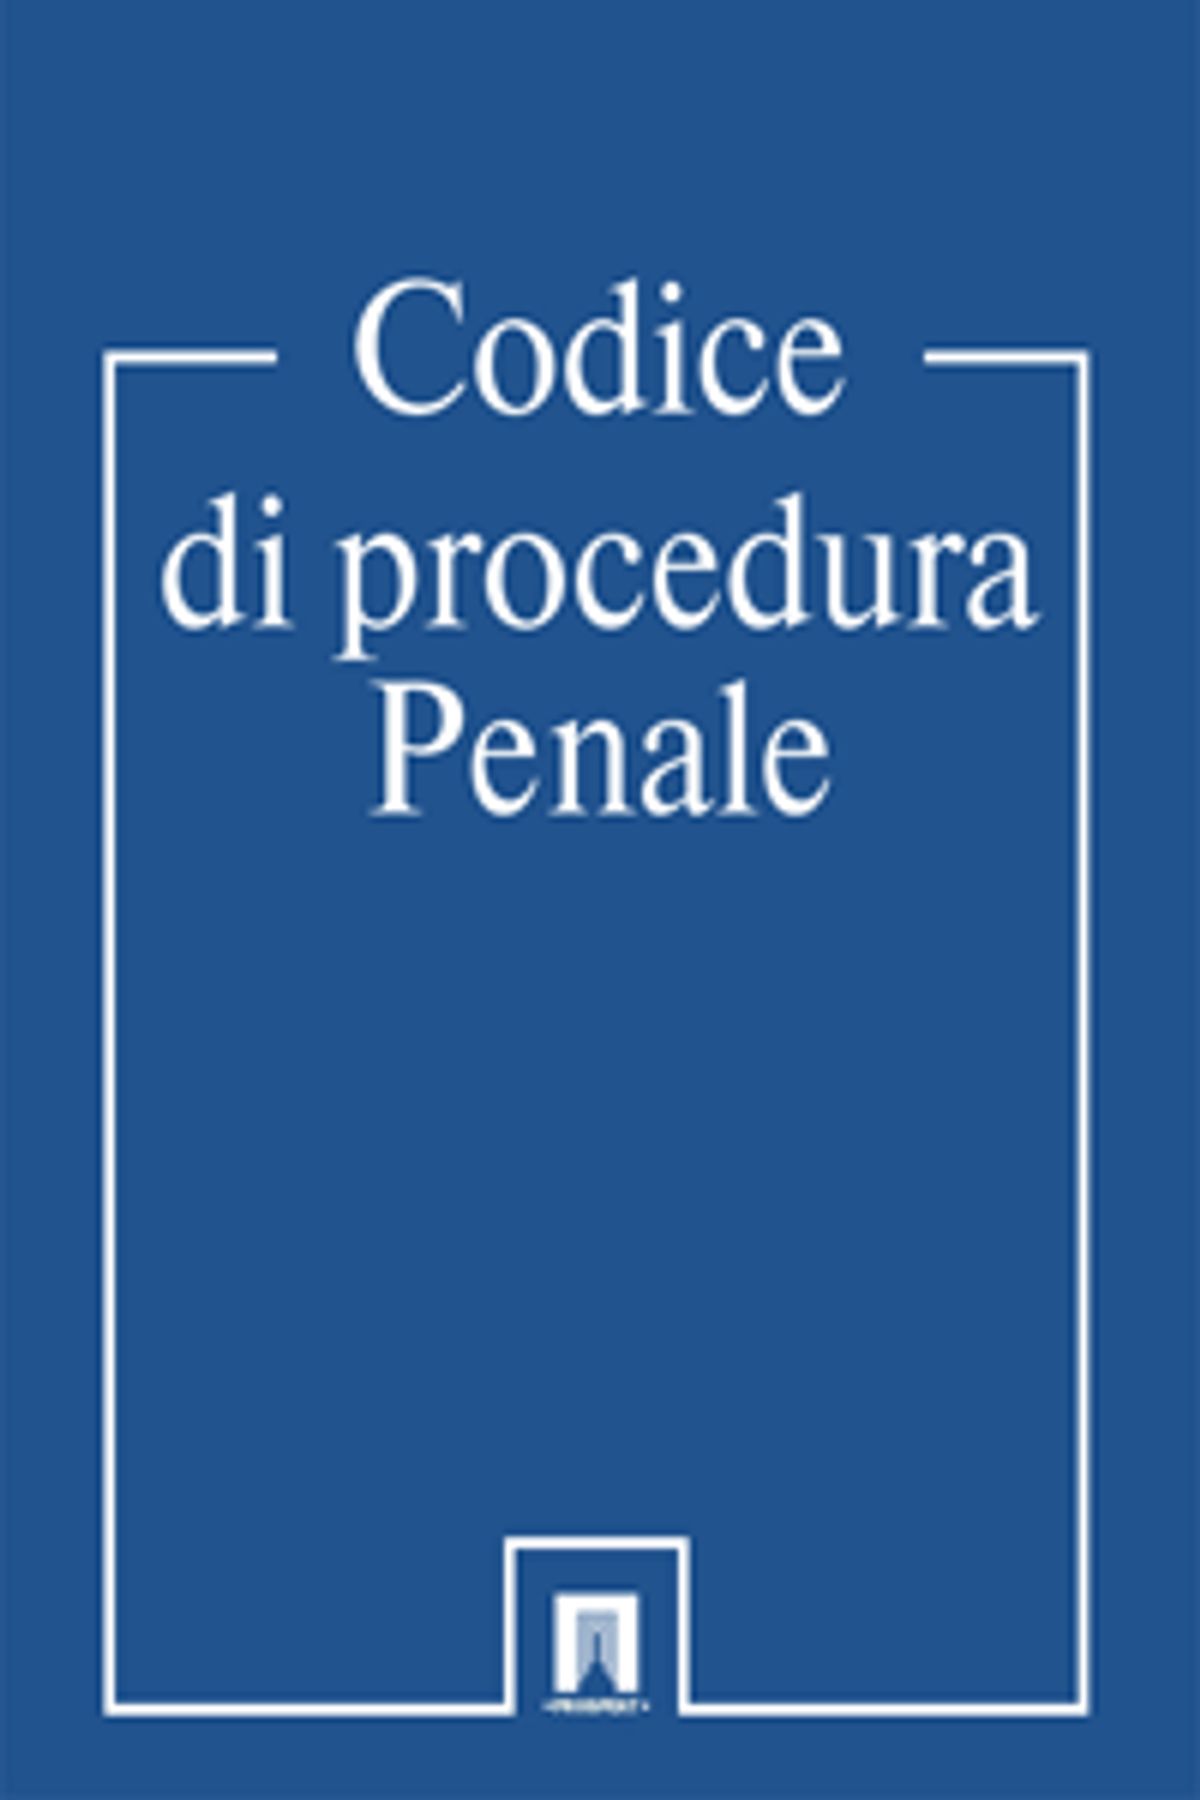 Codice procedura penale aggiornato pdf converter pdf